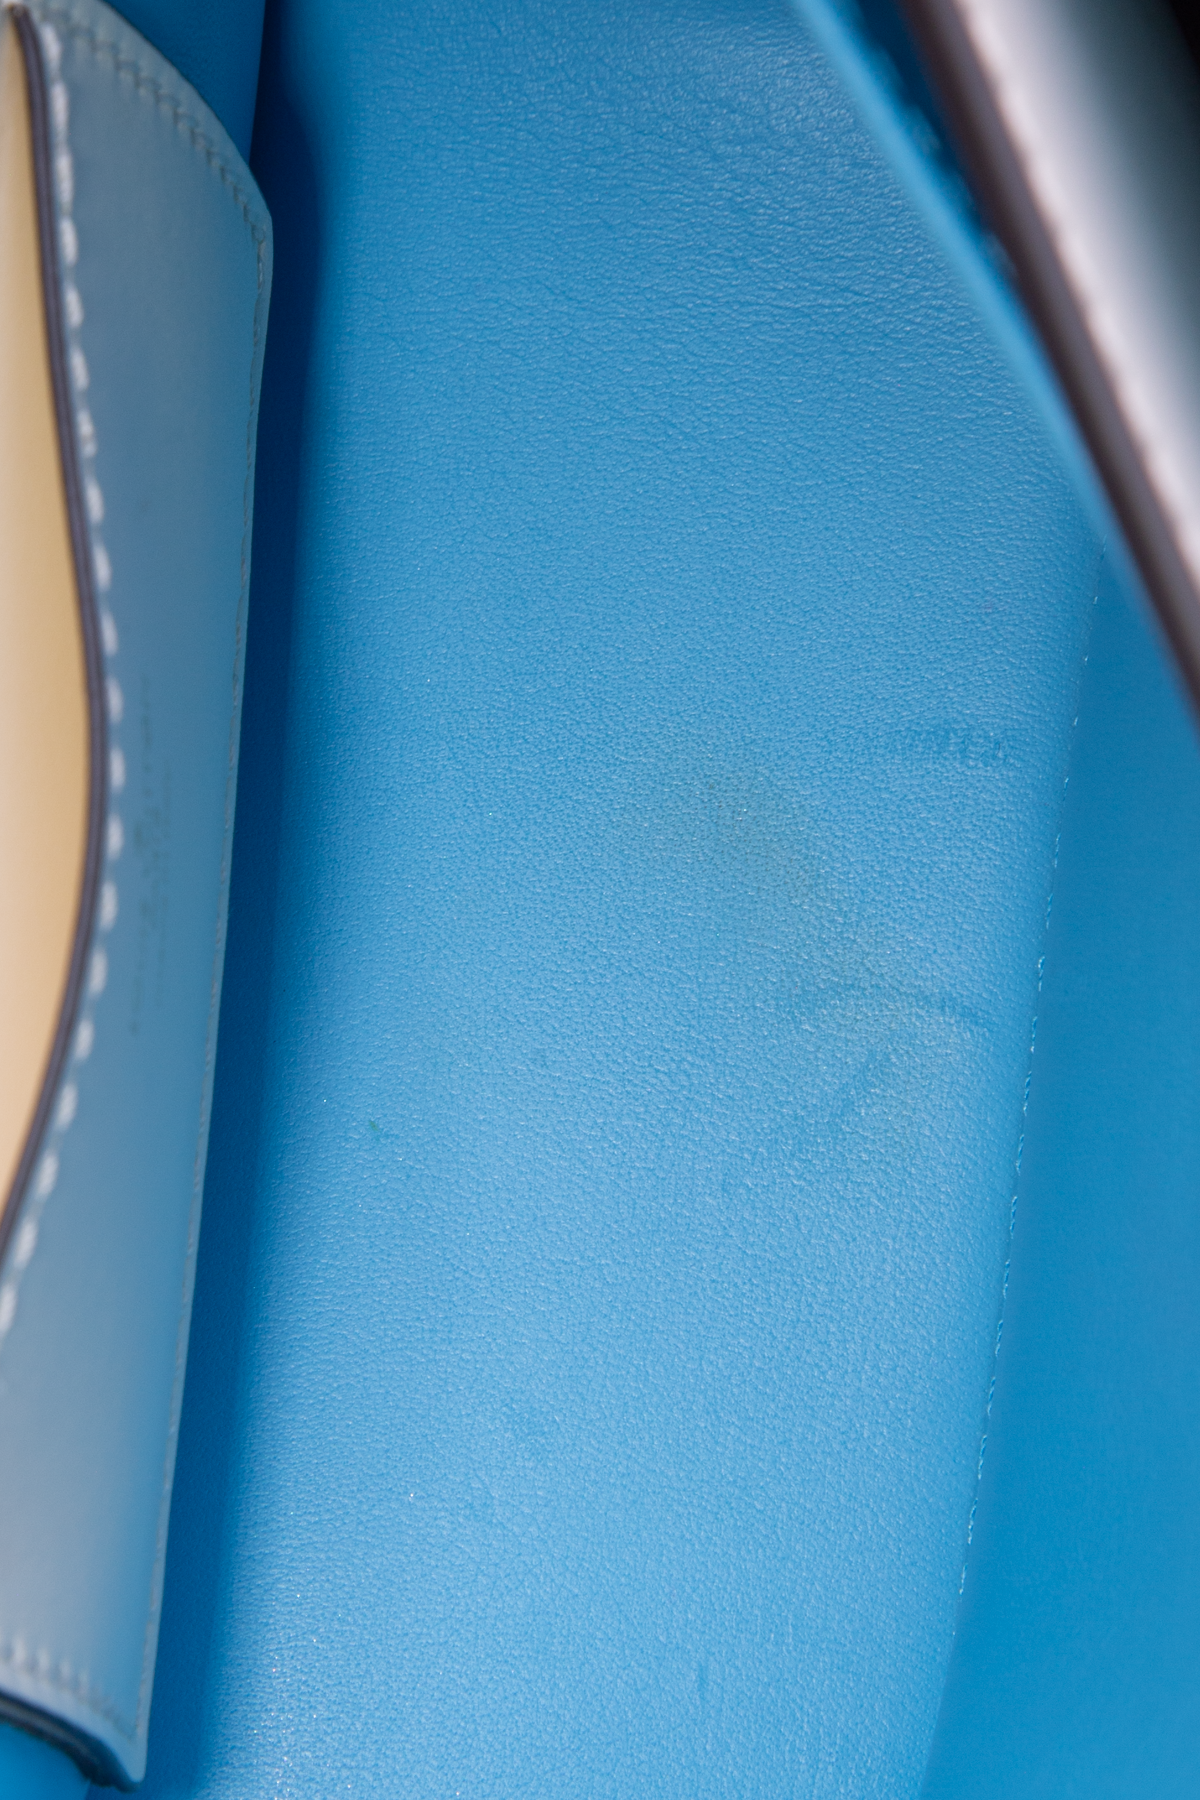 Túi xách Louis Vuitton Pont 9 siêu cấp da bò màu cam size 23 cm